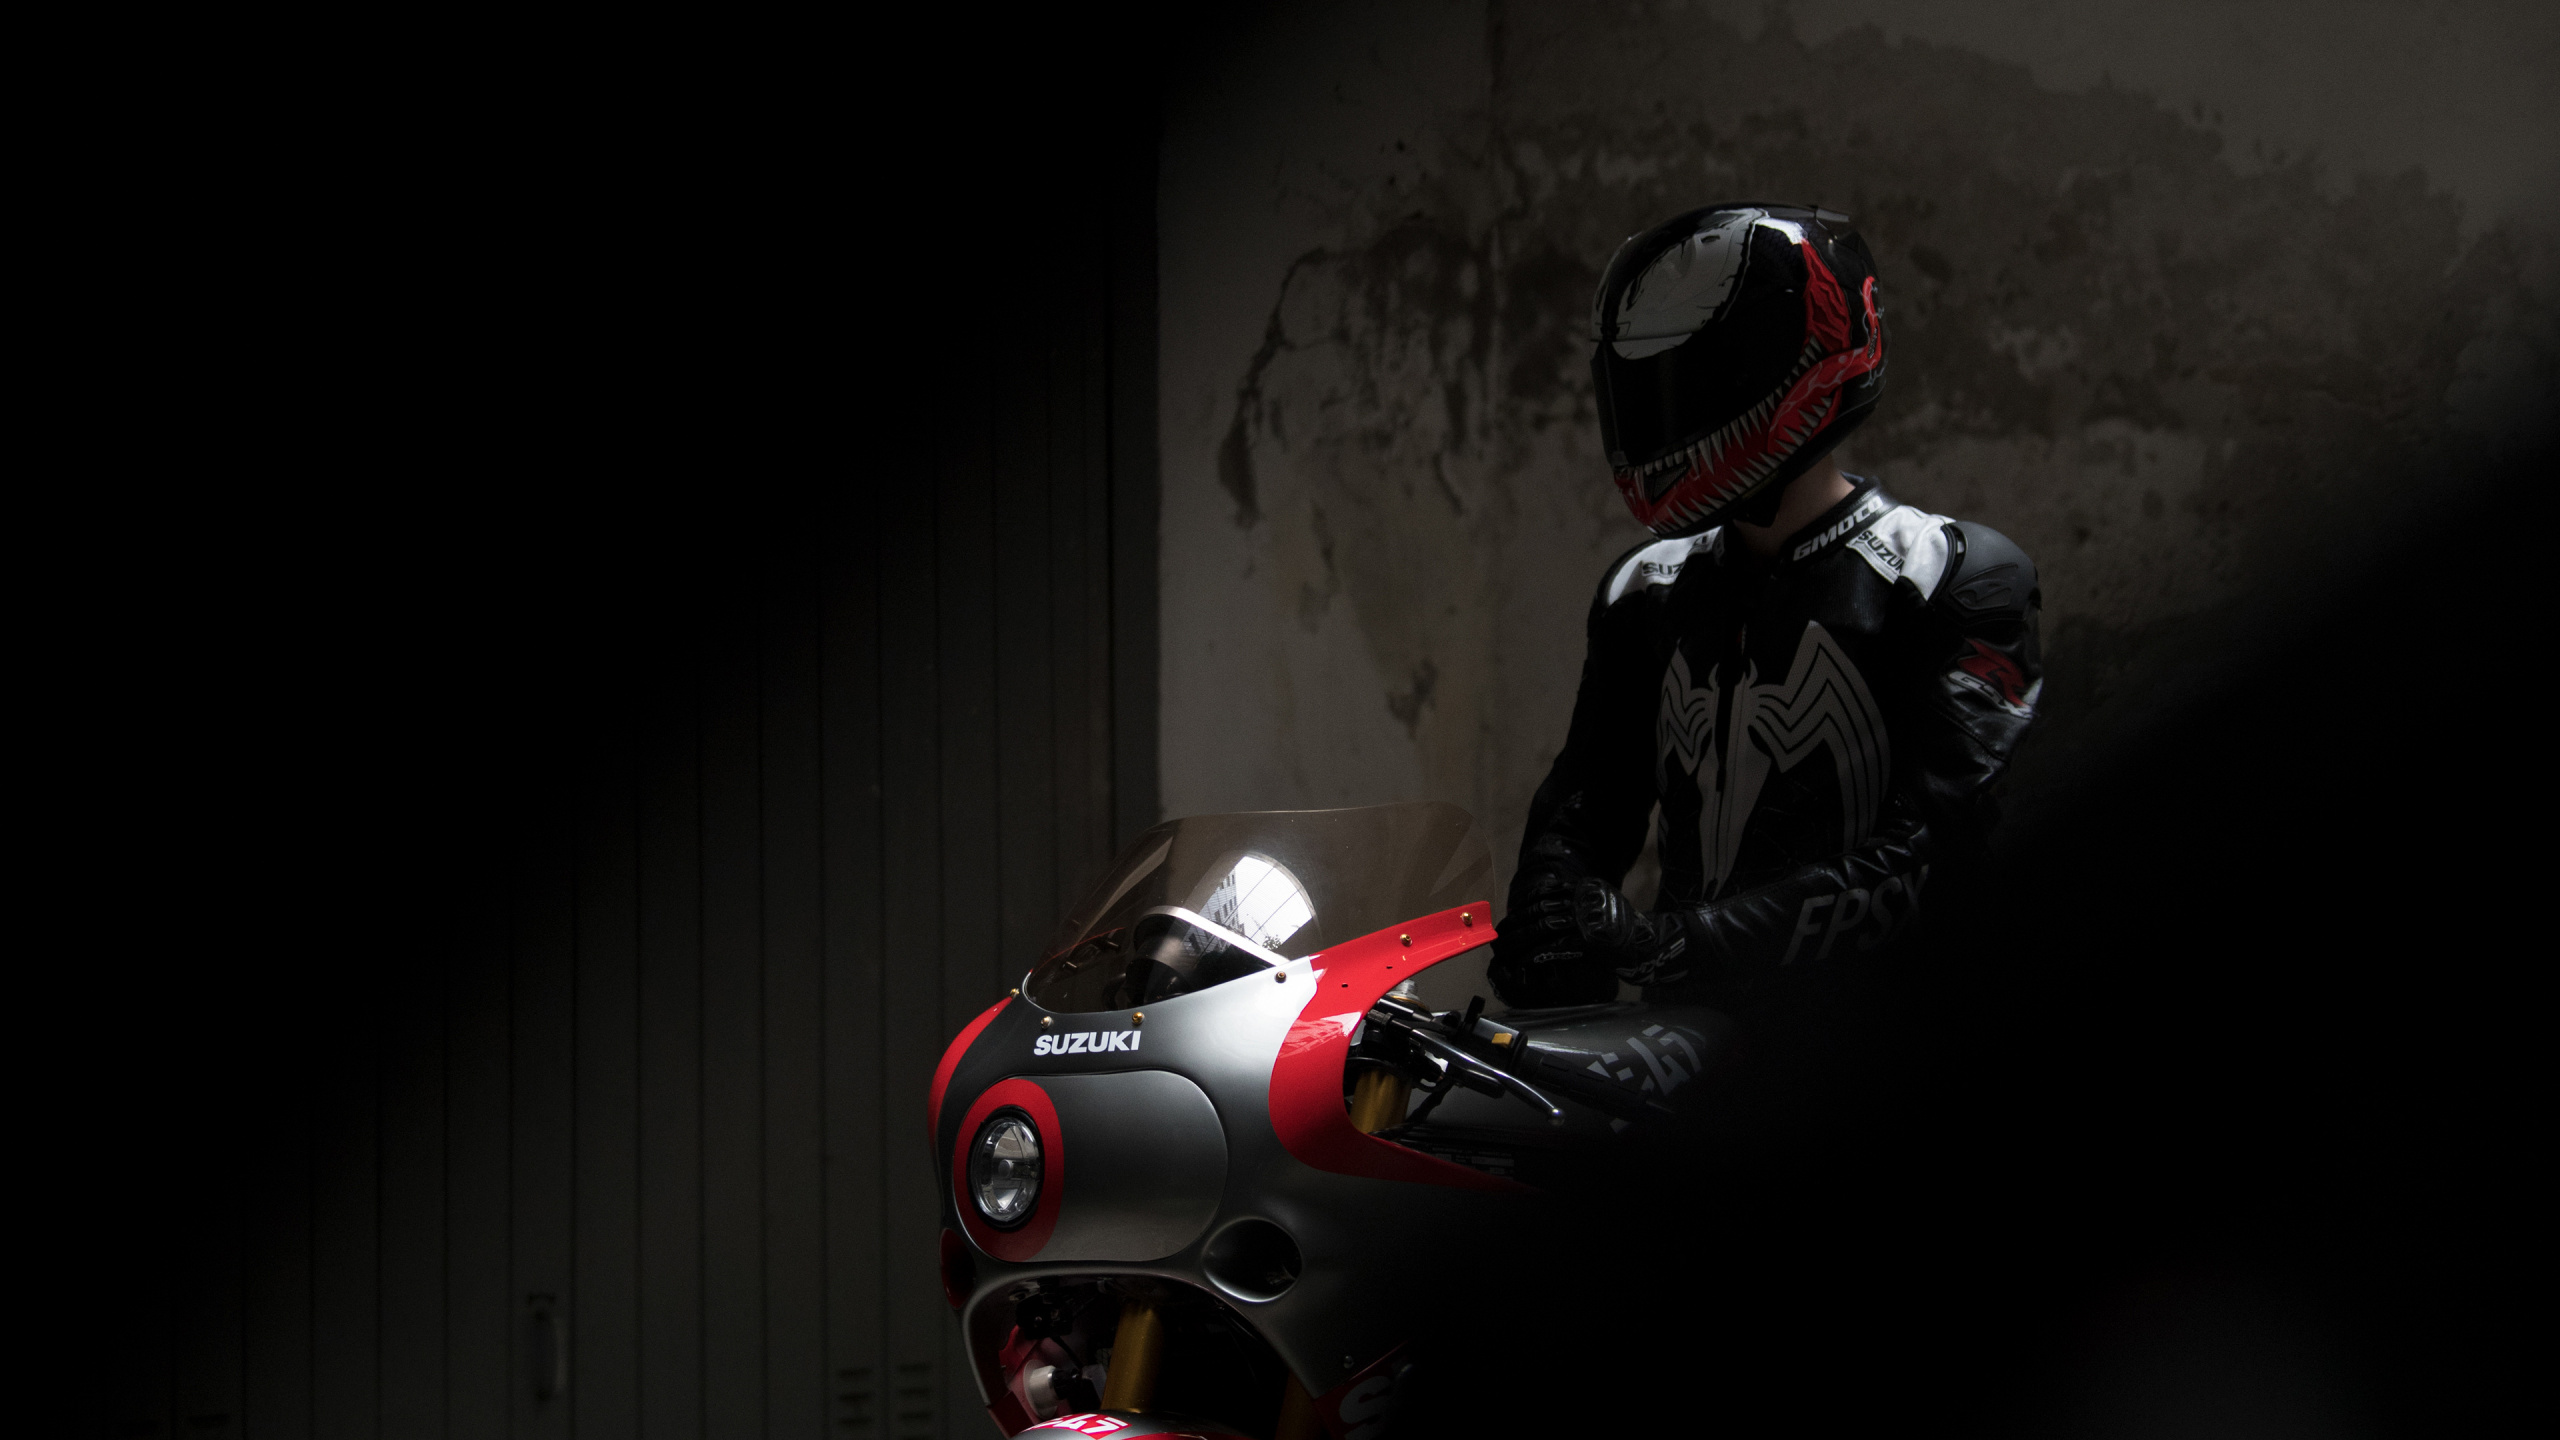 铃木喜欢R1100, 铃木喜欢-R, 红色的, 摩托车头盔, 车灯 壁纸 2560x1440 允许